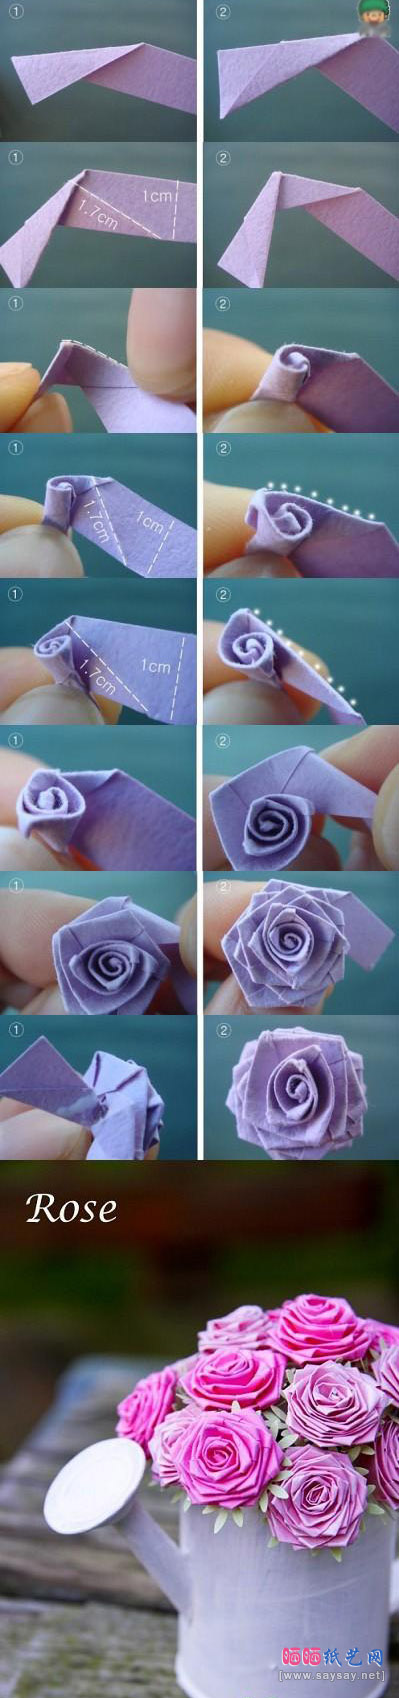 漂亮的玫瑰花折纸教程图解详细步骤